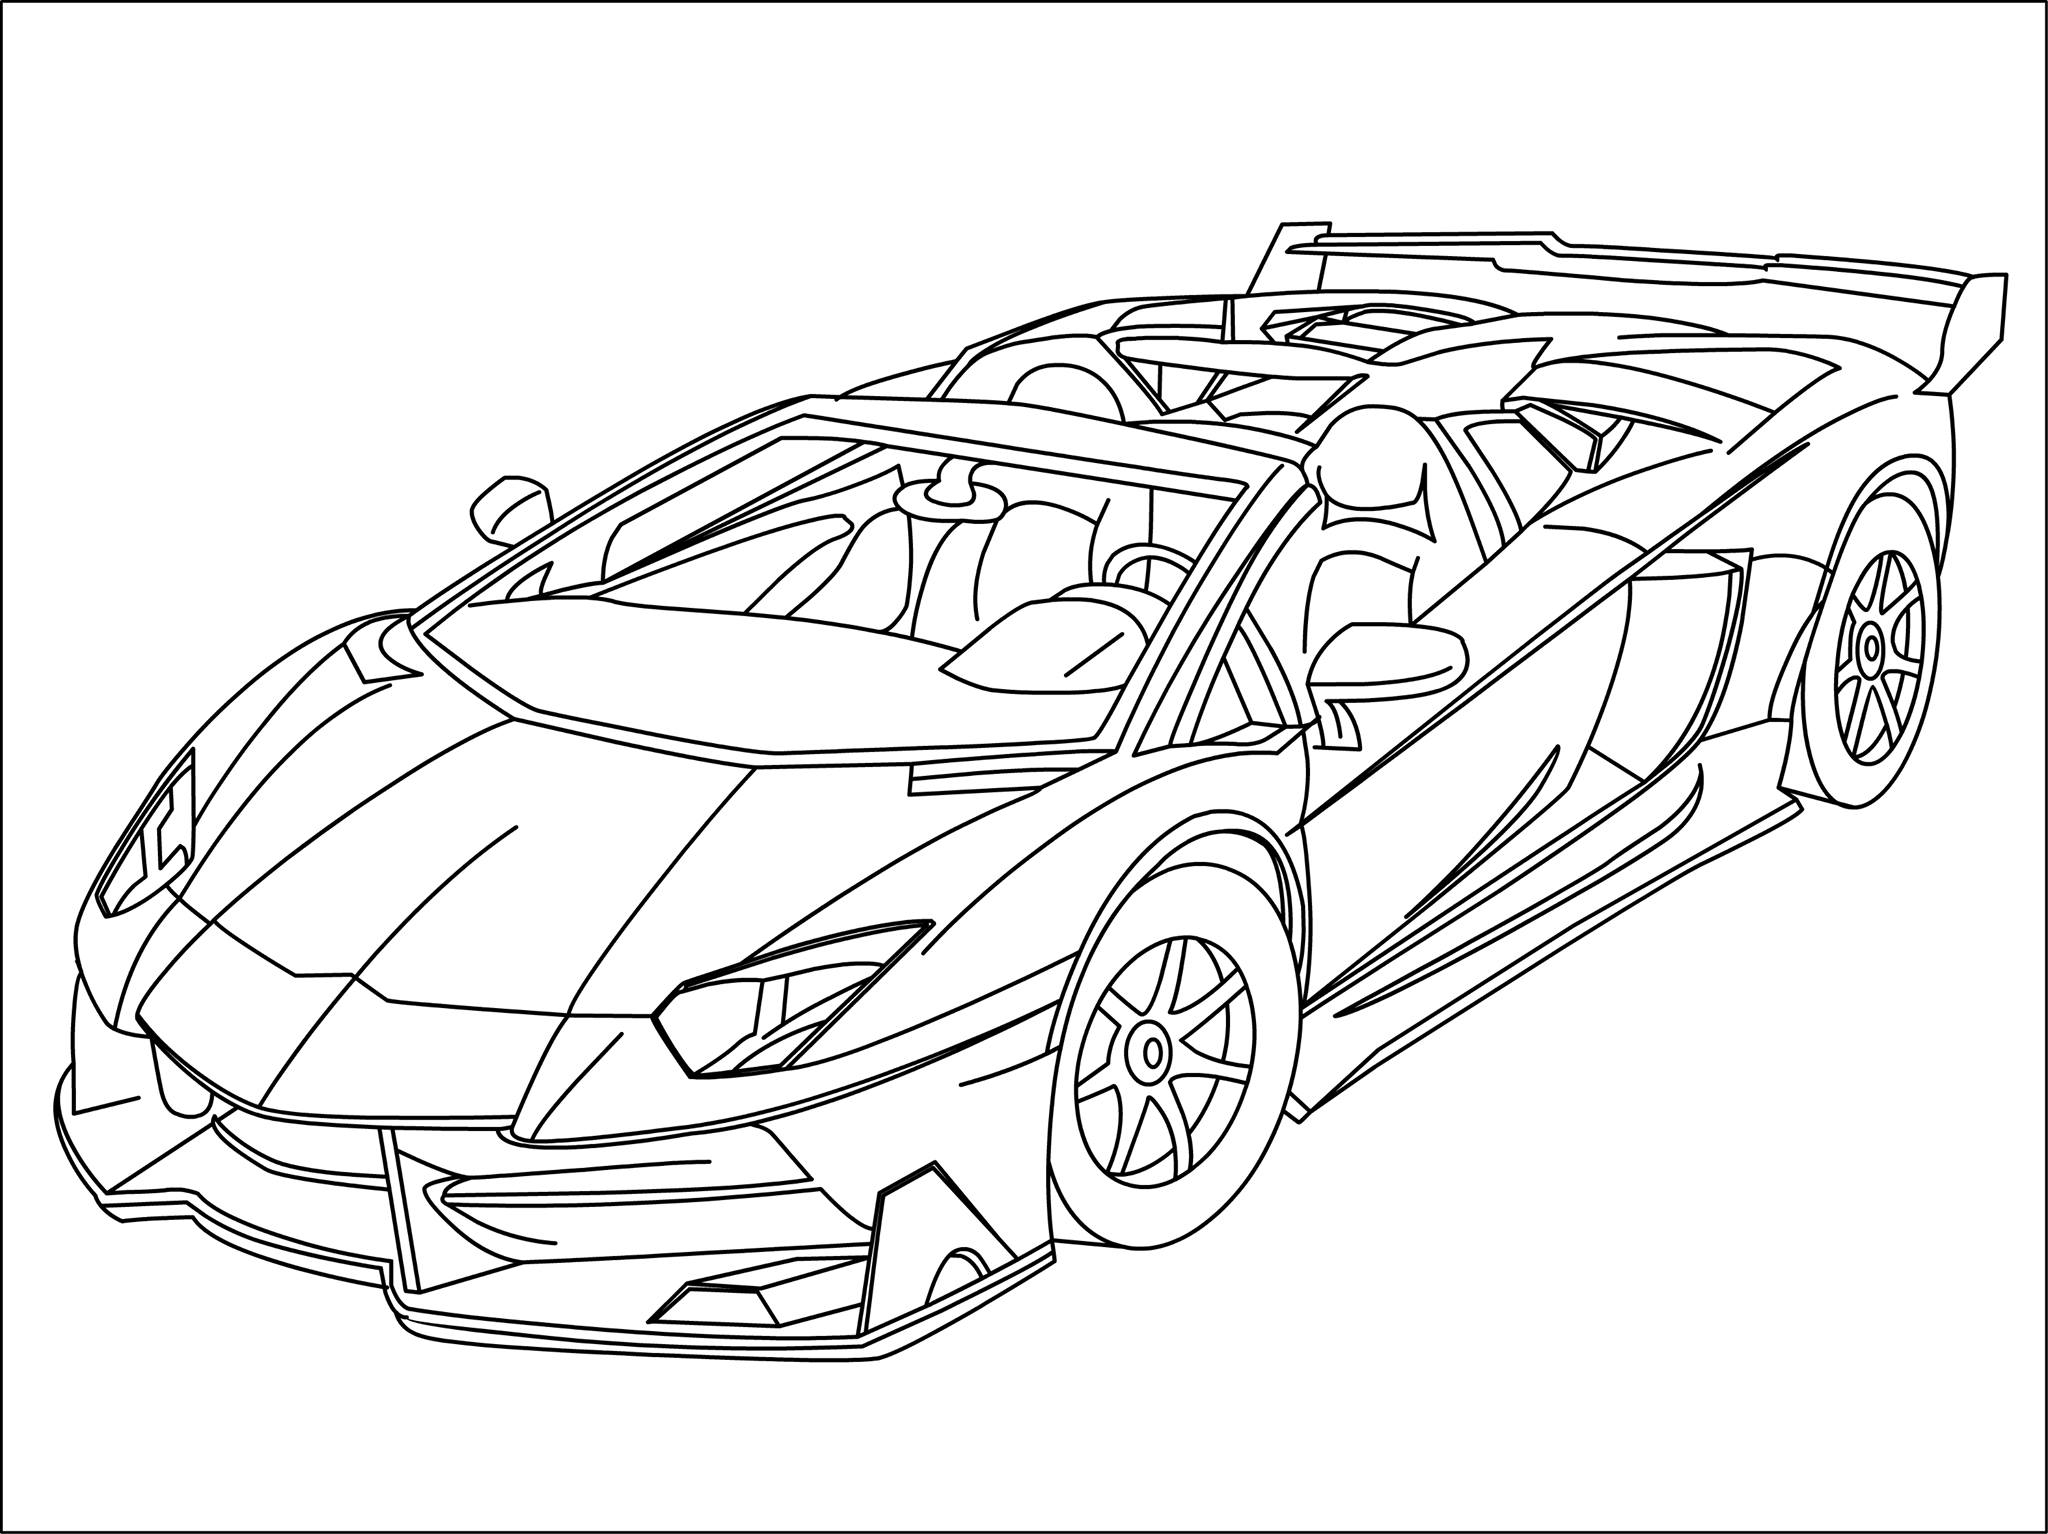 Lamborghini Huracan Drawing at GetDrawings | Free download